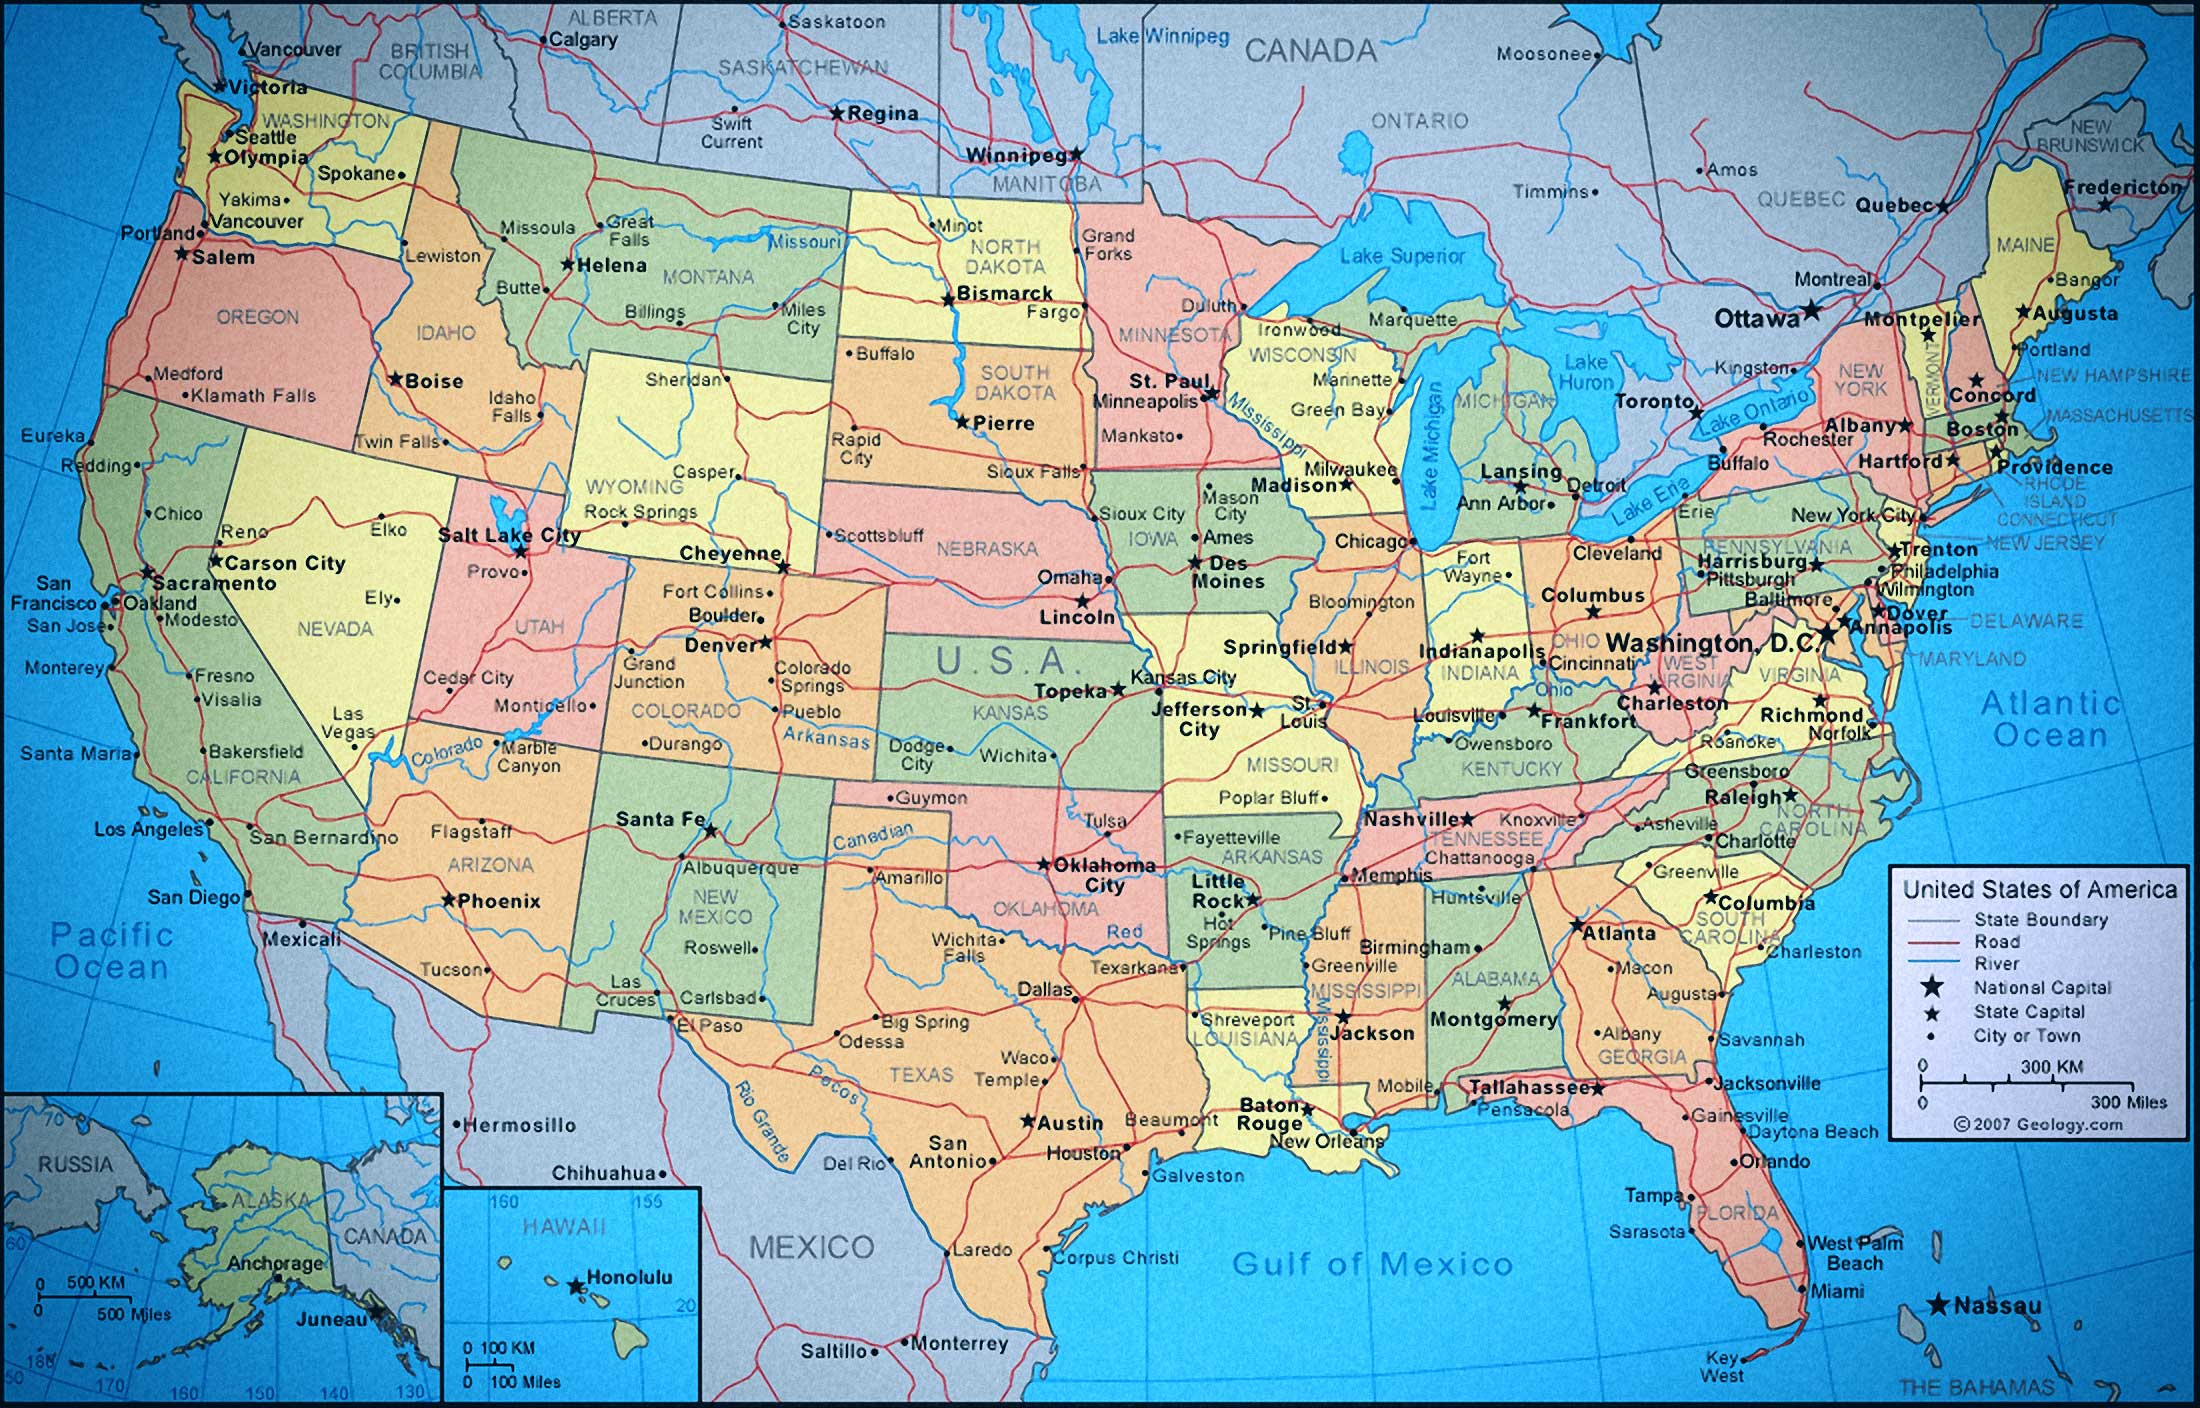 Mapa Pol tico De Los Estados Unidos De Am rica EEUU ABCpedia